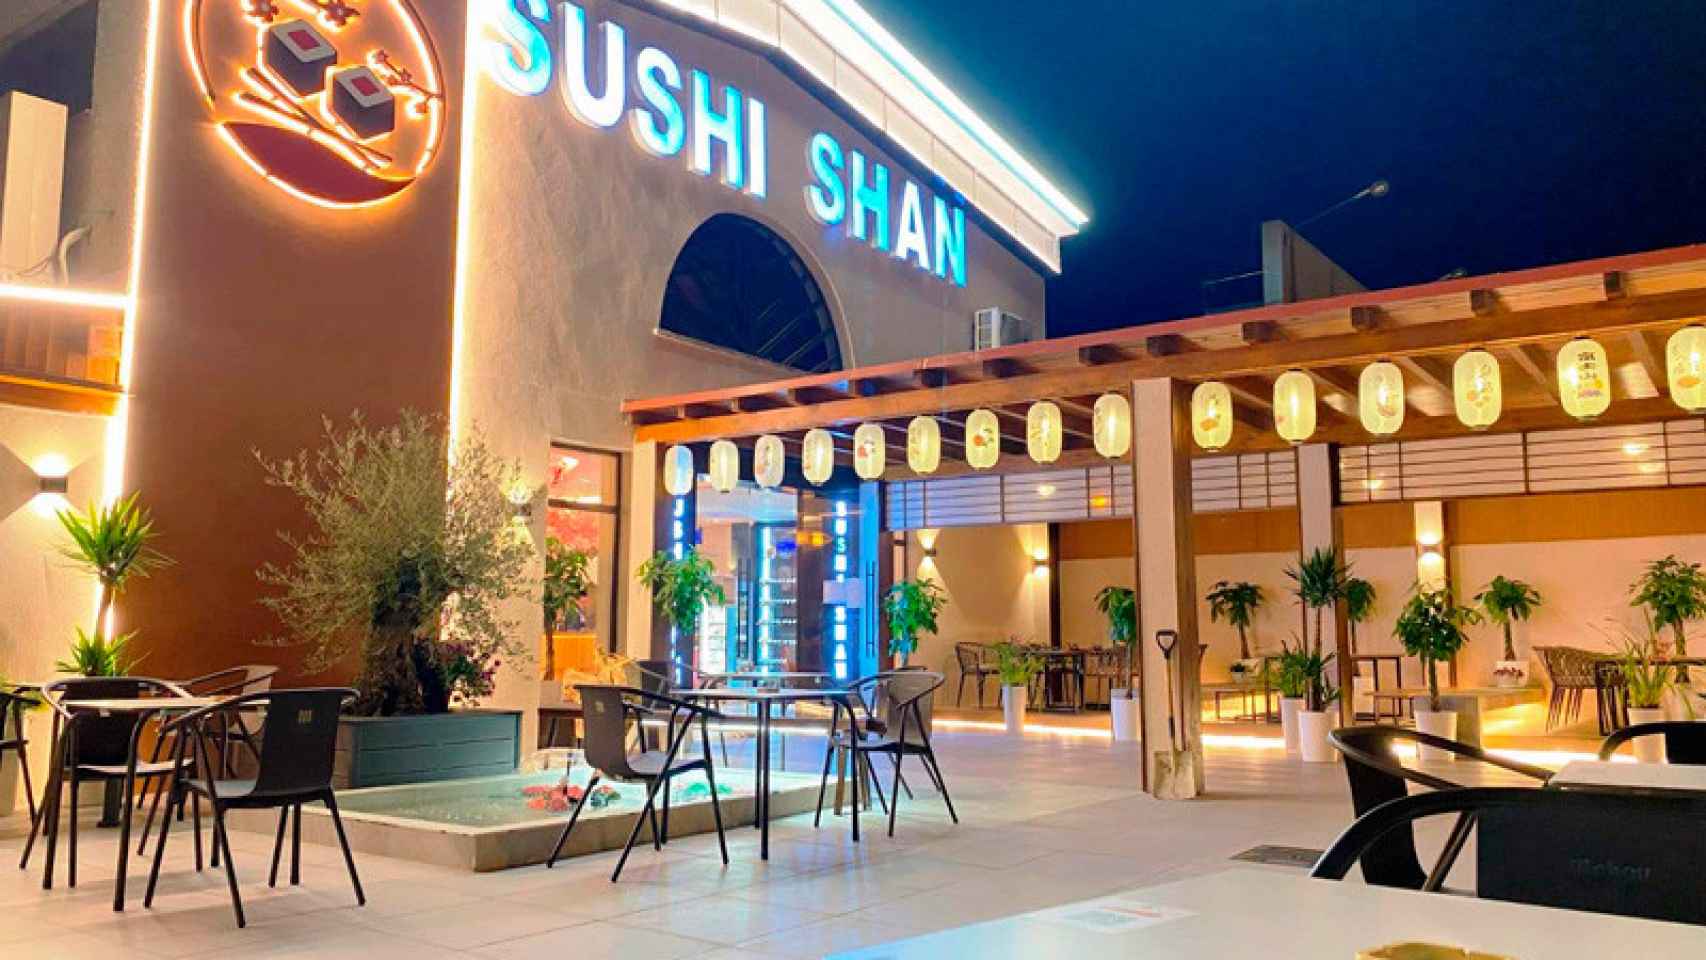 Sushi Shan restaurante.